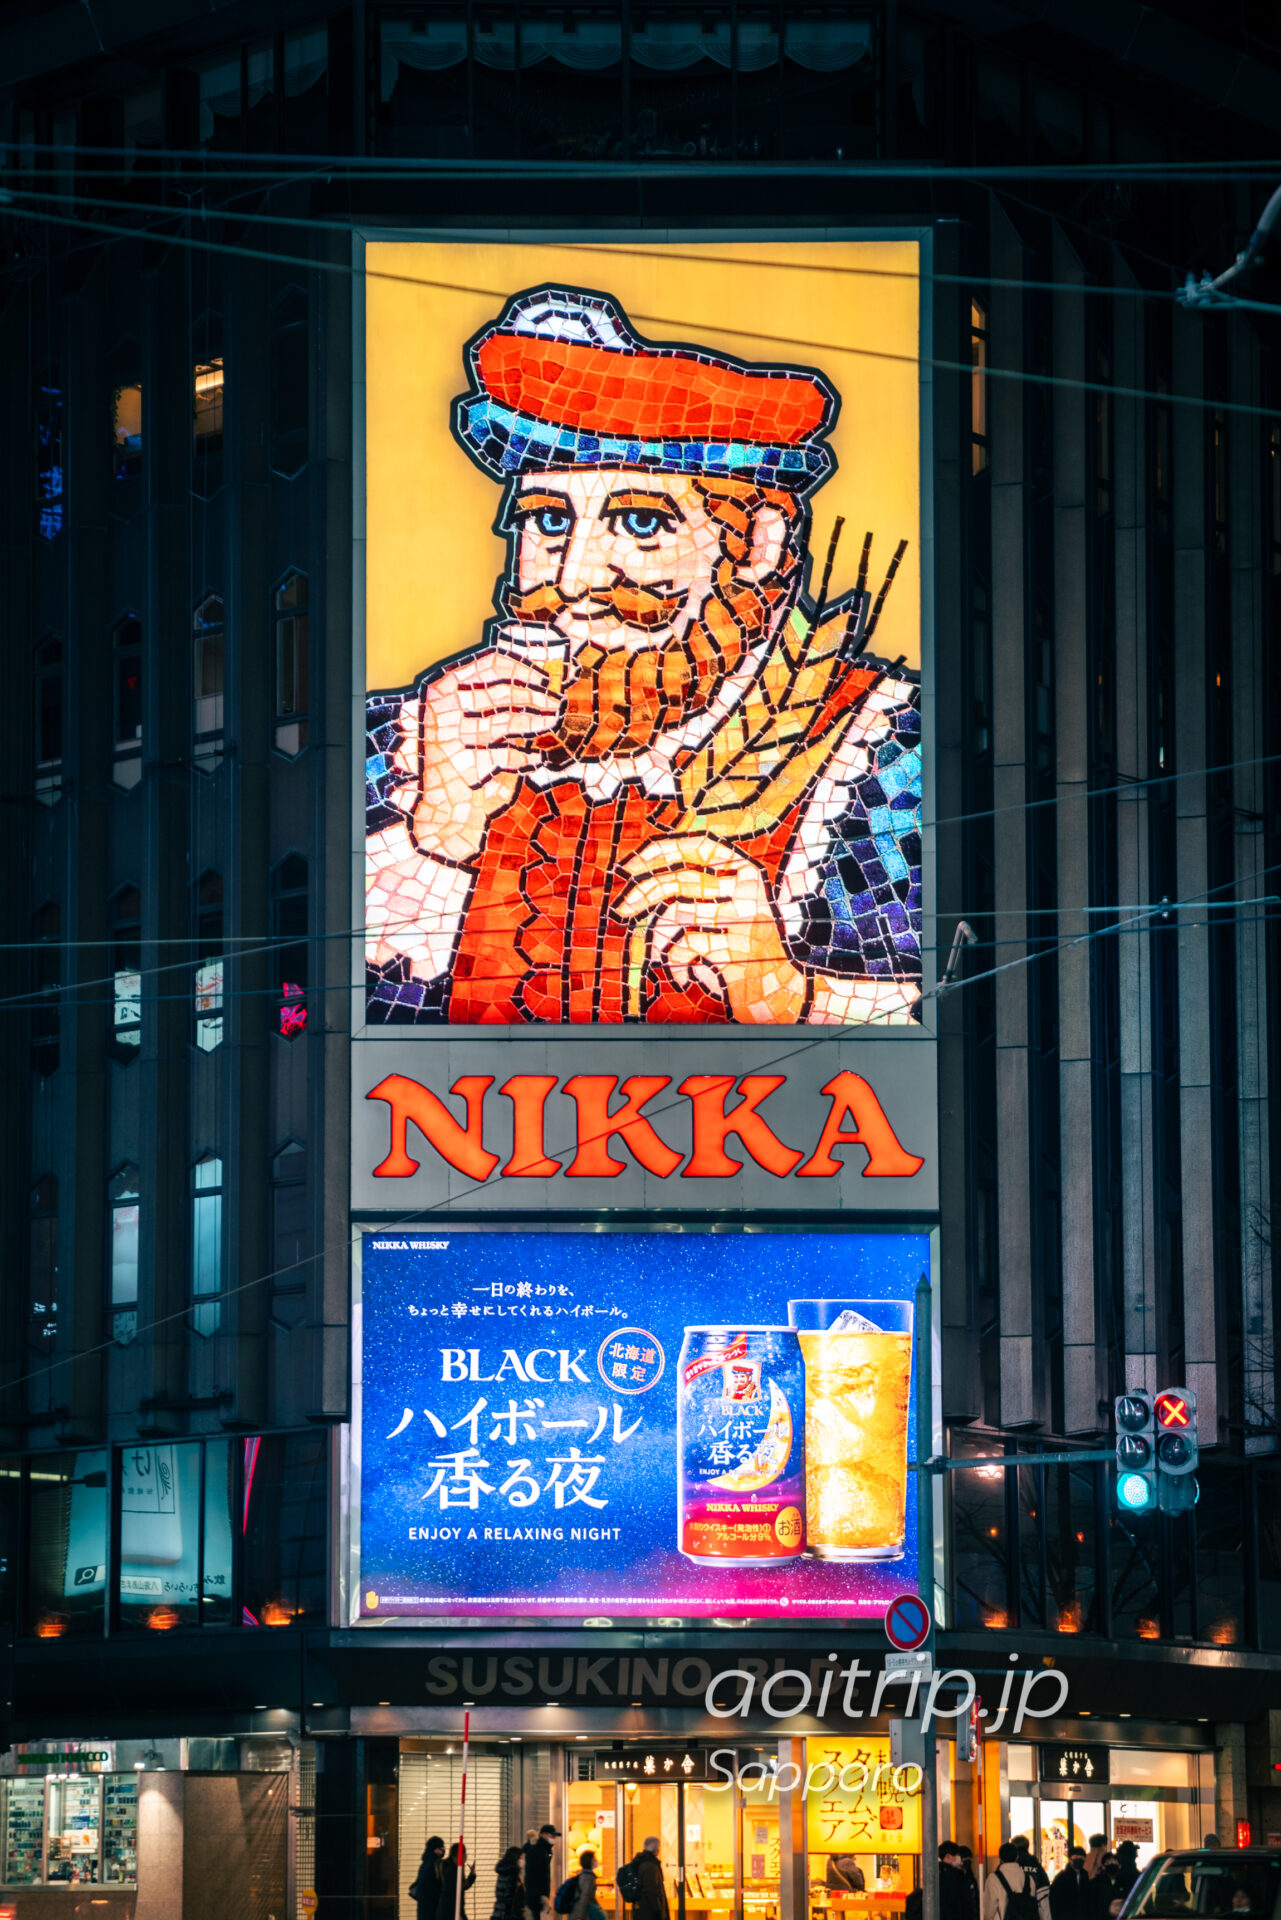 札幌すすきの交差点 ニッカウヰスキー看板 Nikka Whisky Signboard, Susukino, Sapporo